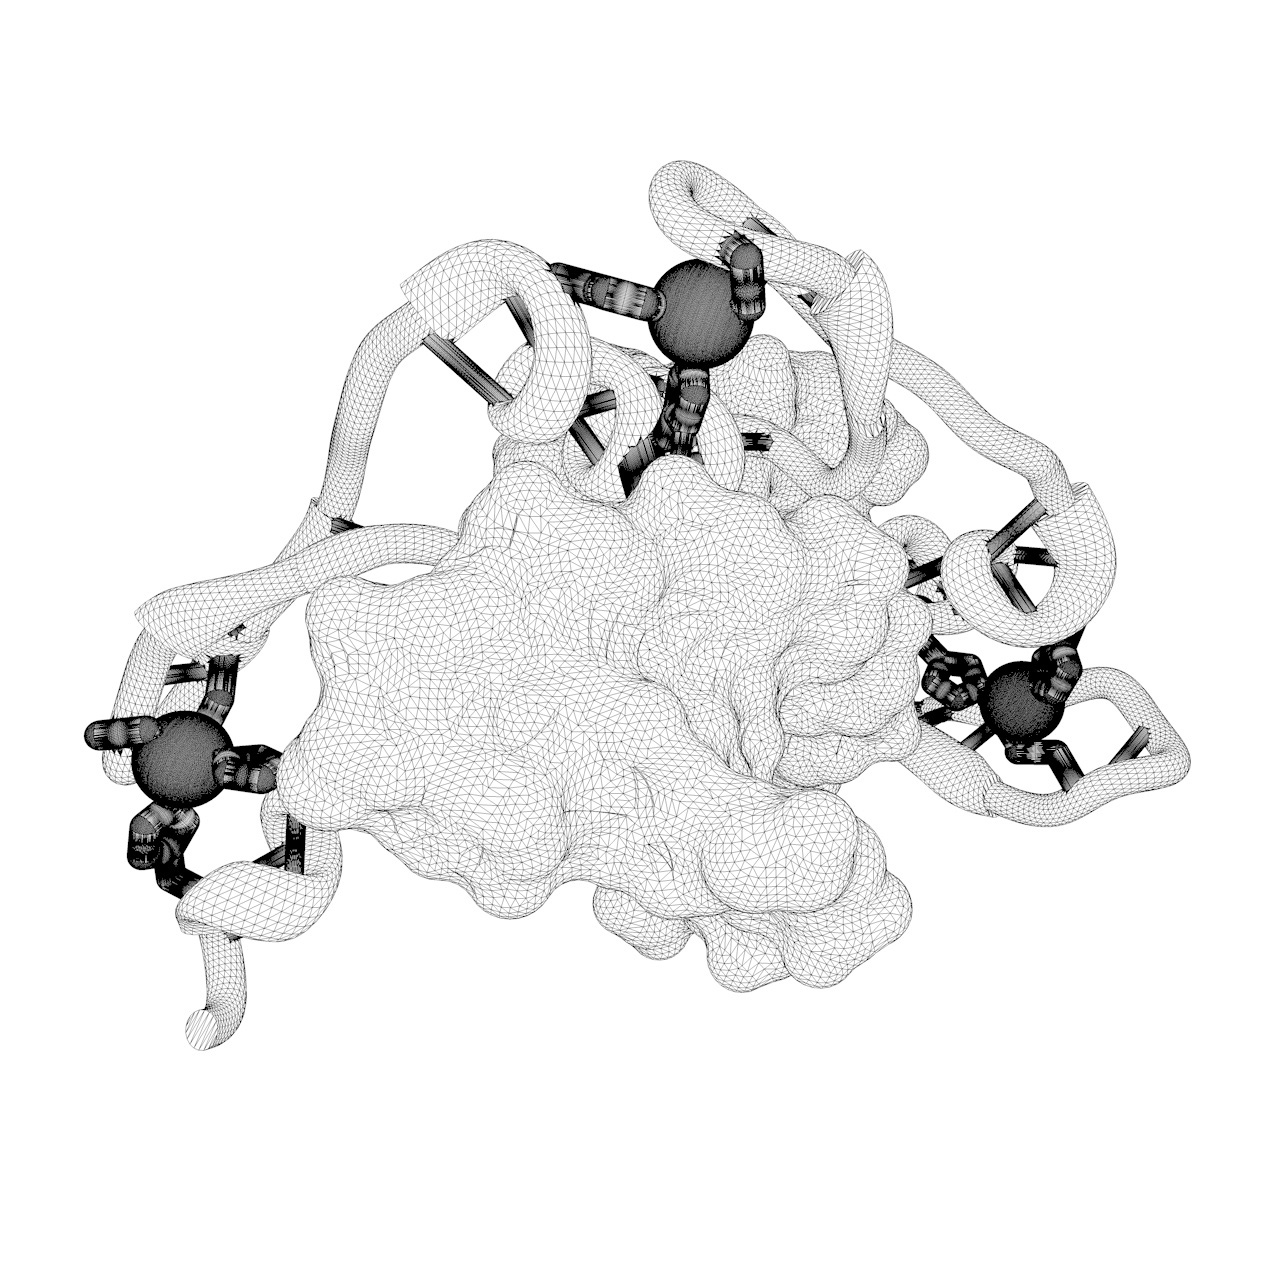 3Д модел штампане молекуларне структуре цинк прста